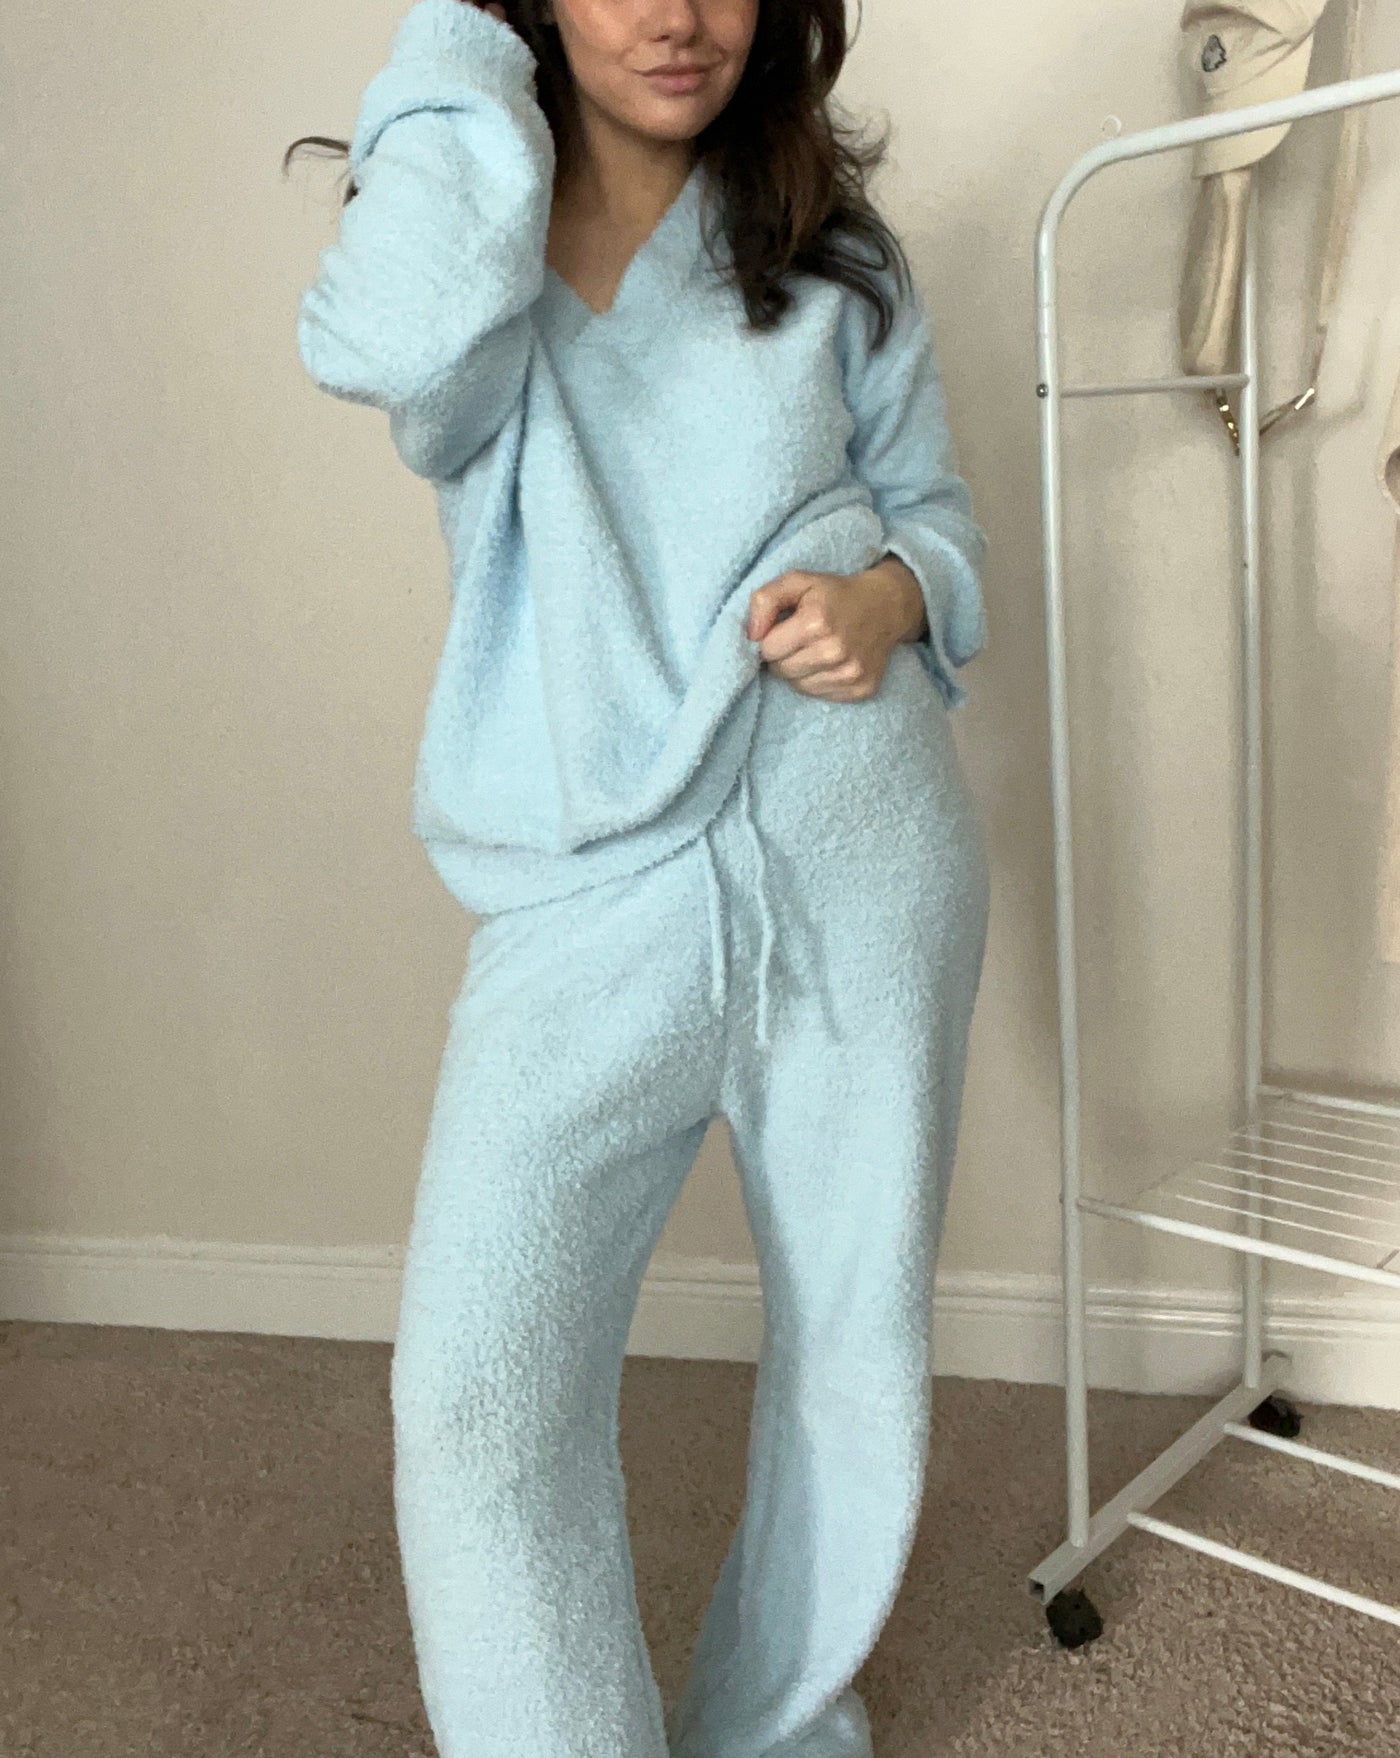 MEROKEETY Fuzzy Long Sleeve Top Wide Leg Pants Pajama Set – Merokeety